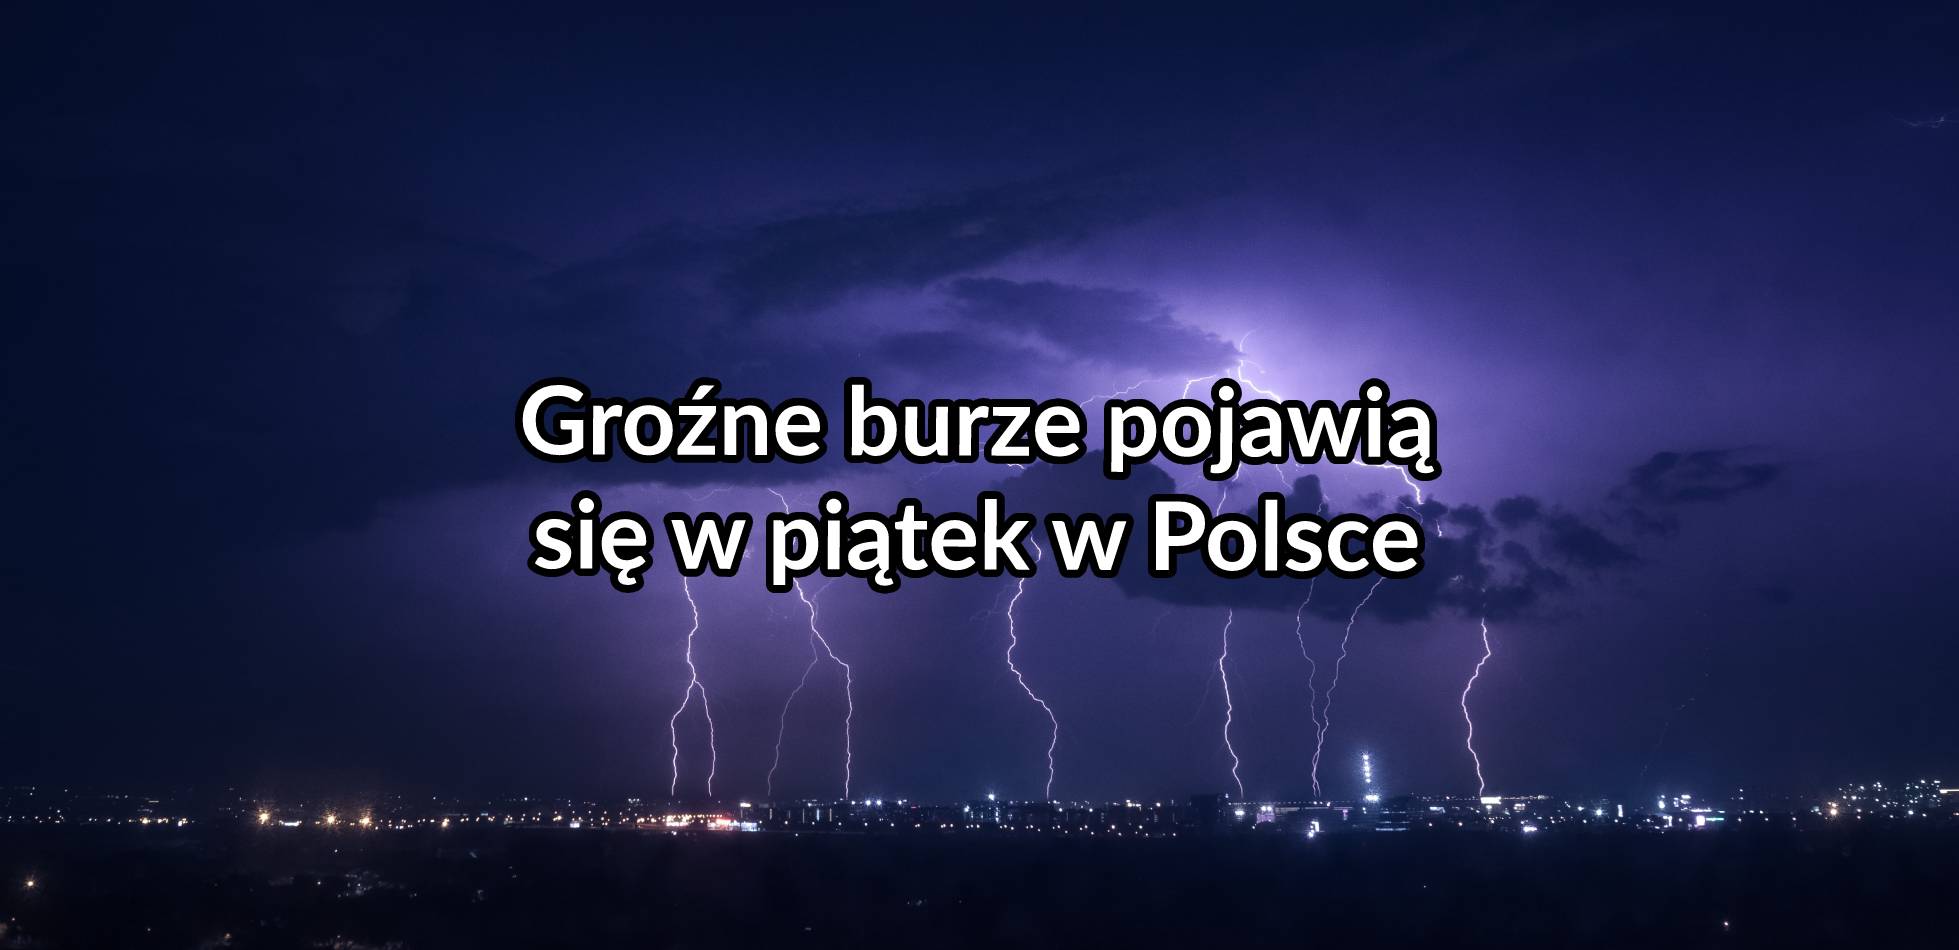 Groźne burze pojawią się w piątek w Polsce